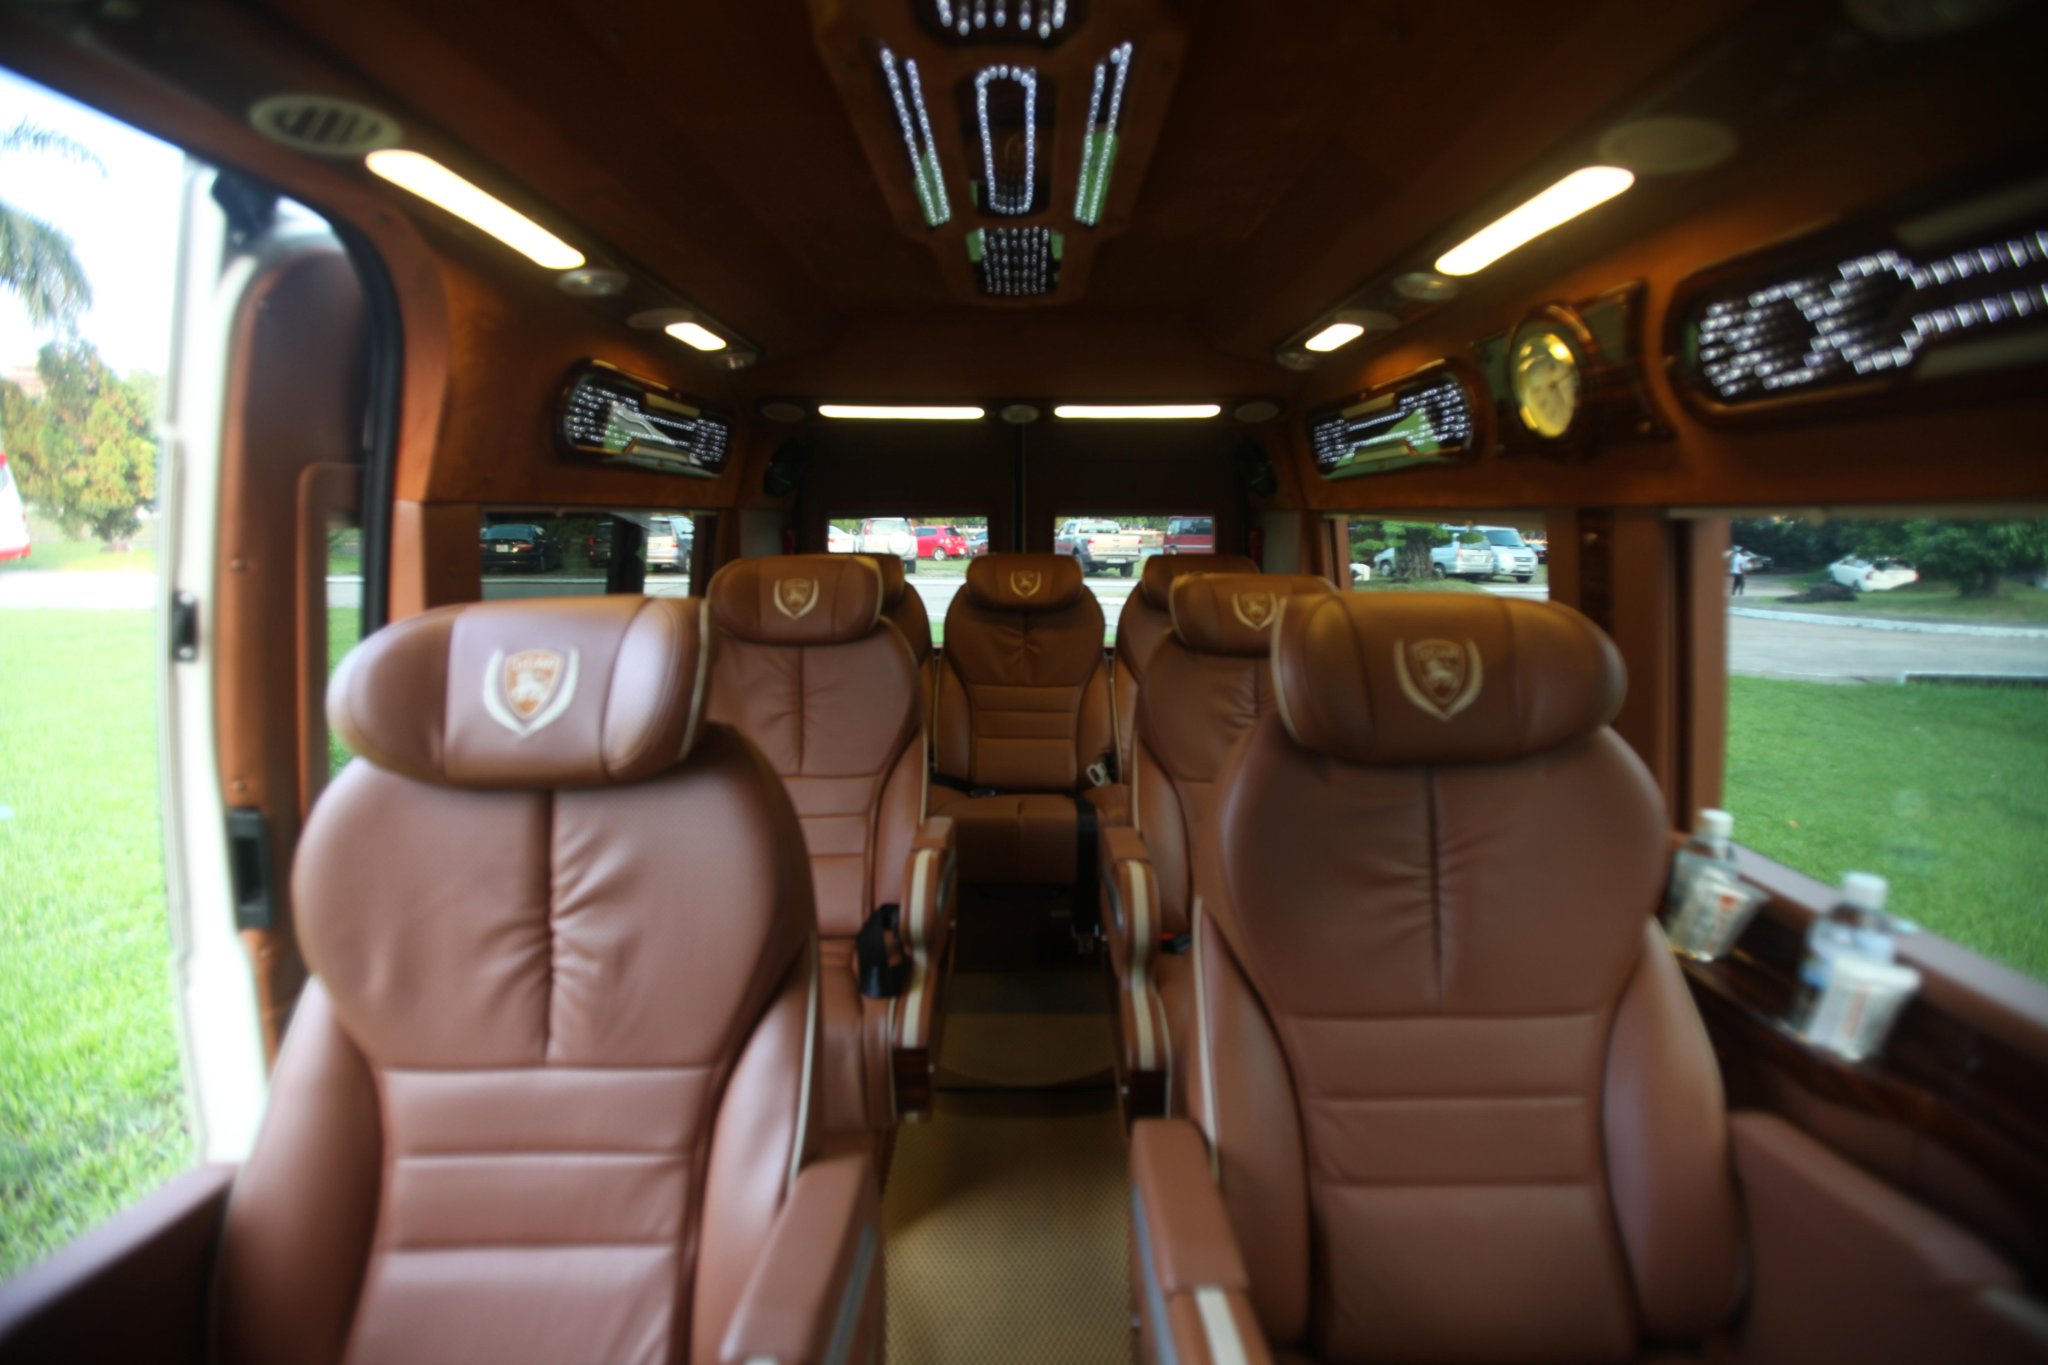 Hãng Xe Pumkin limousine 9 chỗ - Toàn bộ ghế ngồi bọc da cao cấp